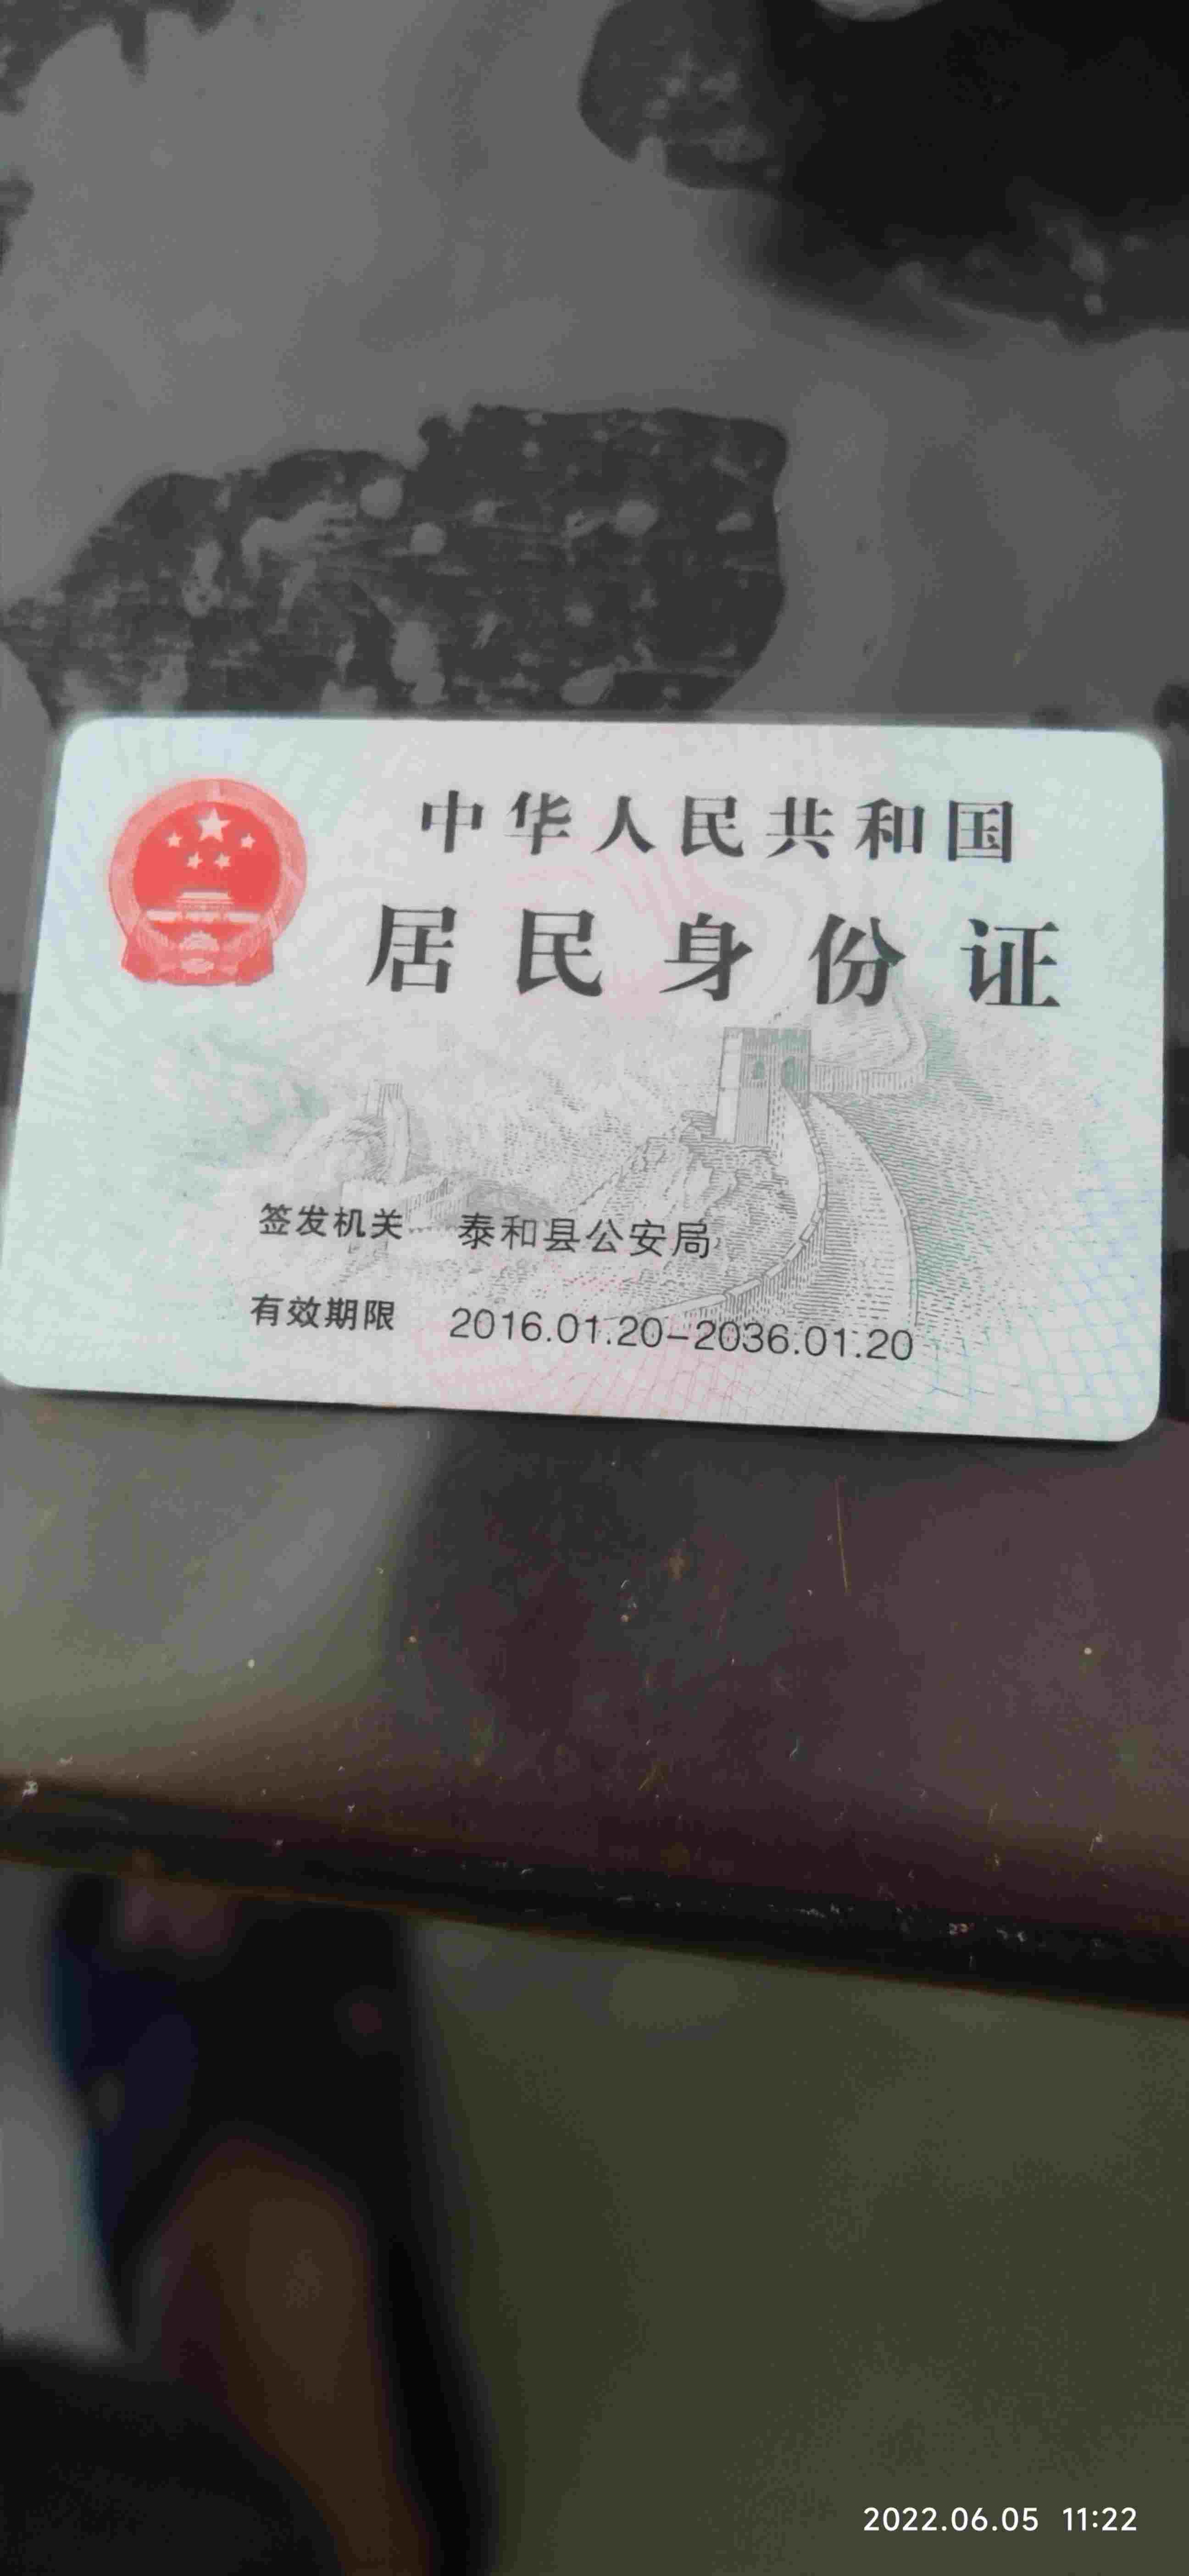 九江银行信用卡图片